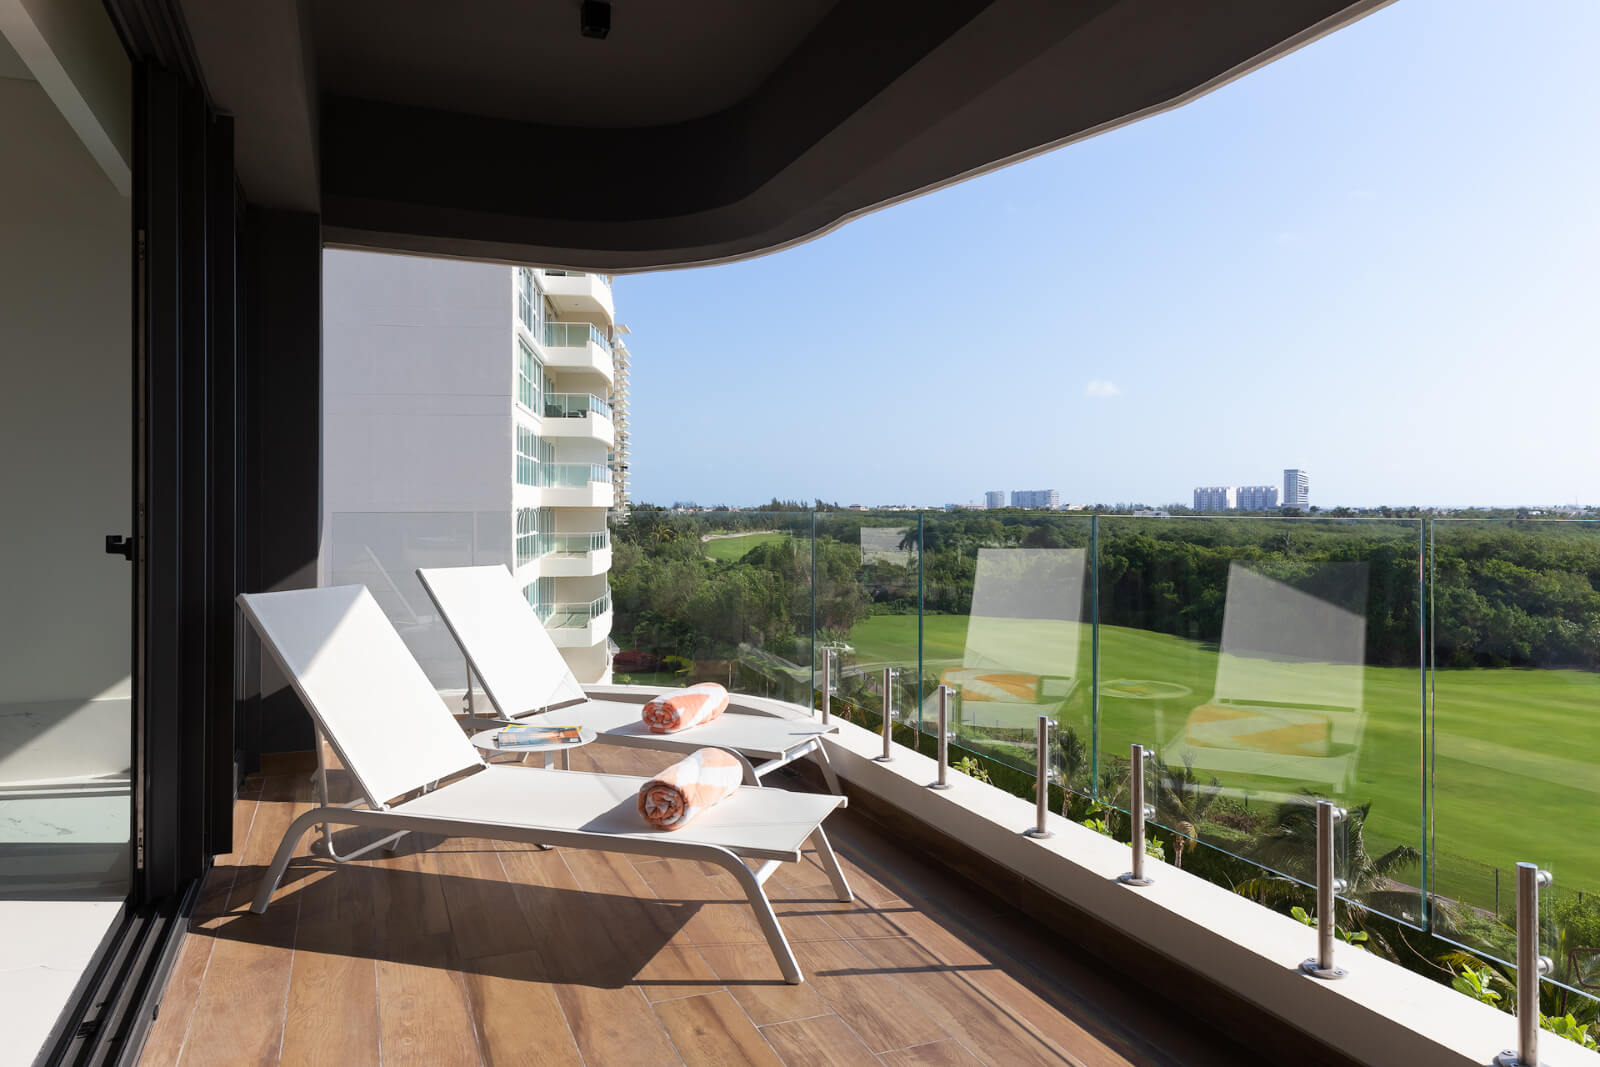 Condominio con jardin privado, alberca infinity, jacuzzi, snack bar, cuarto de servicio, pre-construccion, Puerto Cancun